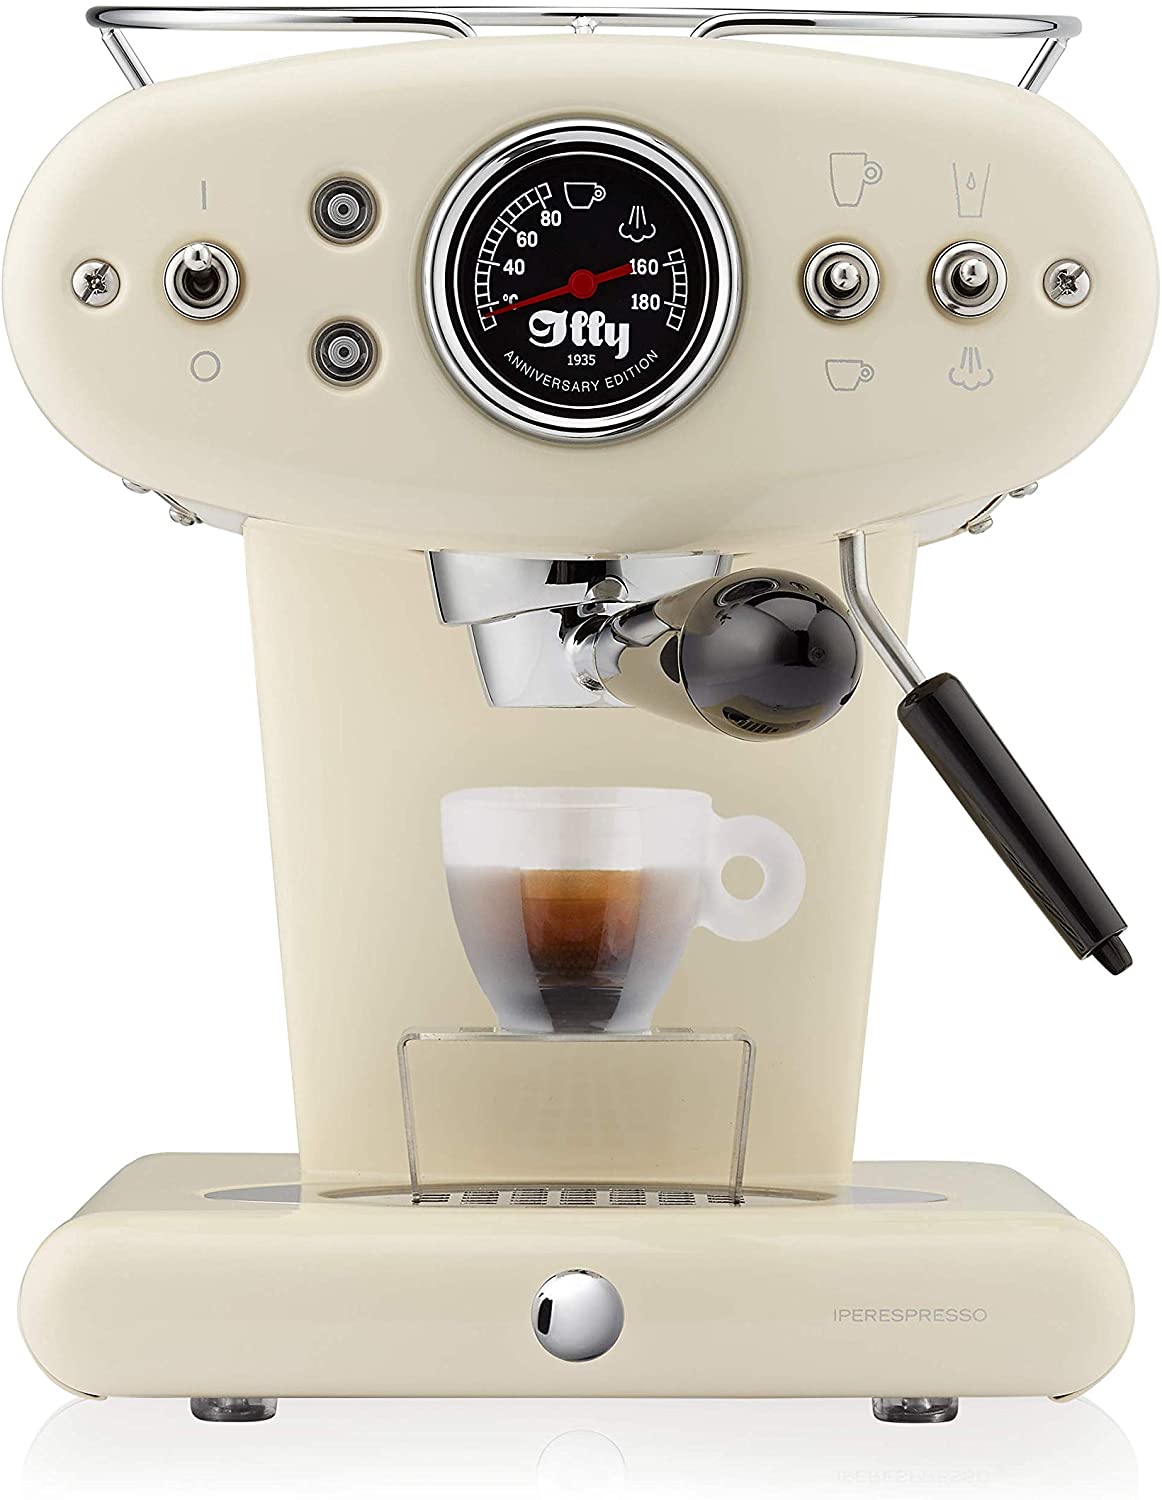 Francis Francis Coffee Machine Espresso in Capsules Ipere SPRESSO x1 Anniversary, 1.0 Litre Red